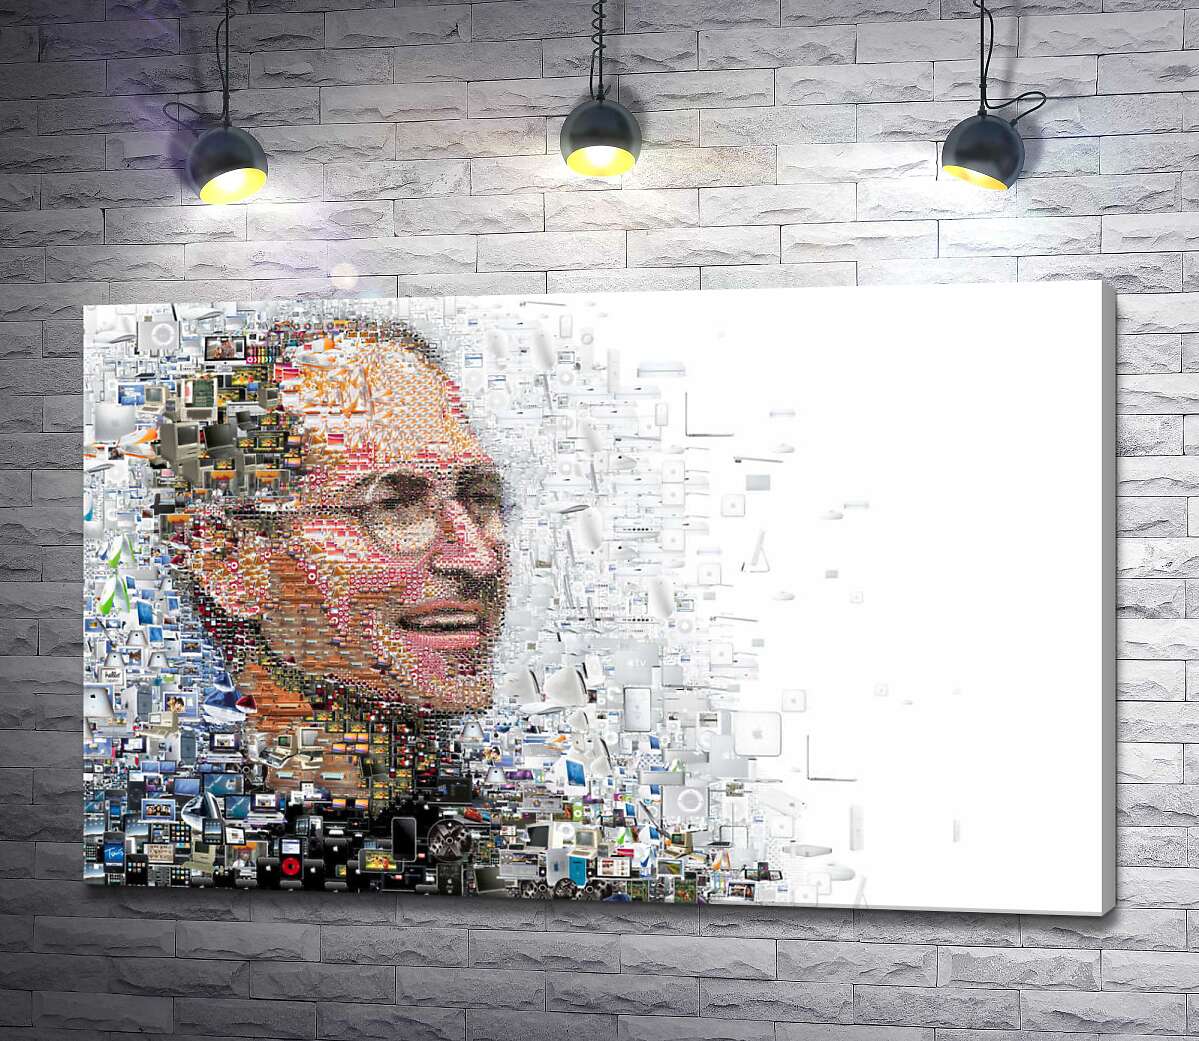 картина Стив Джобс (Steve Jobs) из тысячей изображений гаджетов